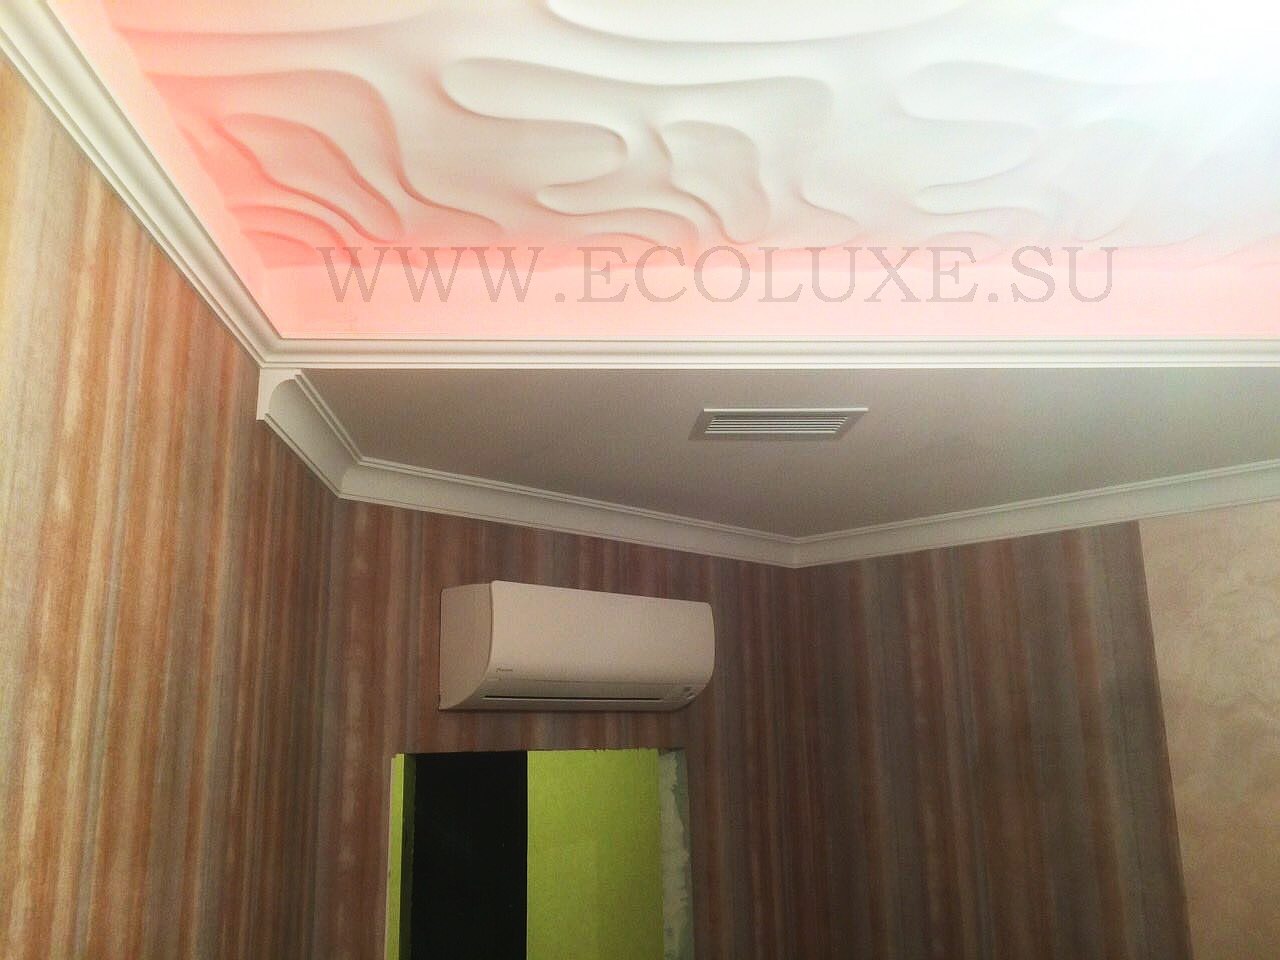 Монтаж системы приточно-вытяжной вентиляции в квартире на базе рекуператора тепла и влаги Ecoluxe (IRRIDIO)